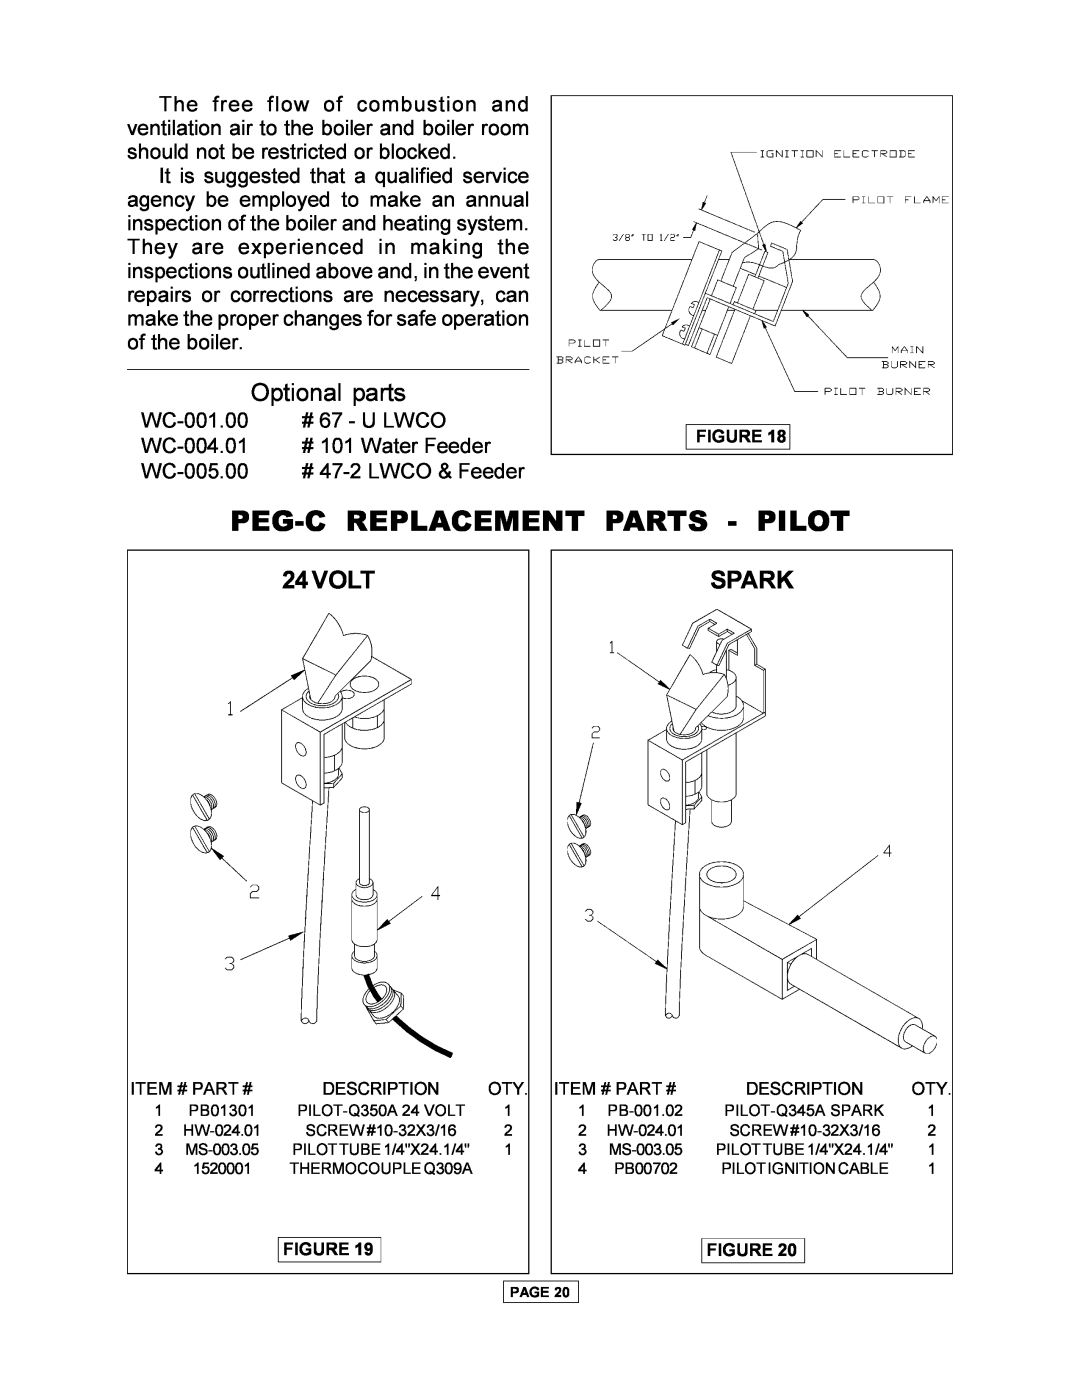 Utica PEG-C installation manual Peg-Creplacement Parts - Pilot, 24VOLT, Spark, Optional parts 